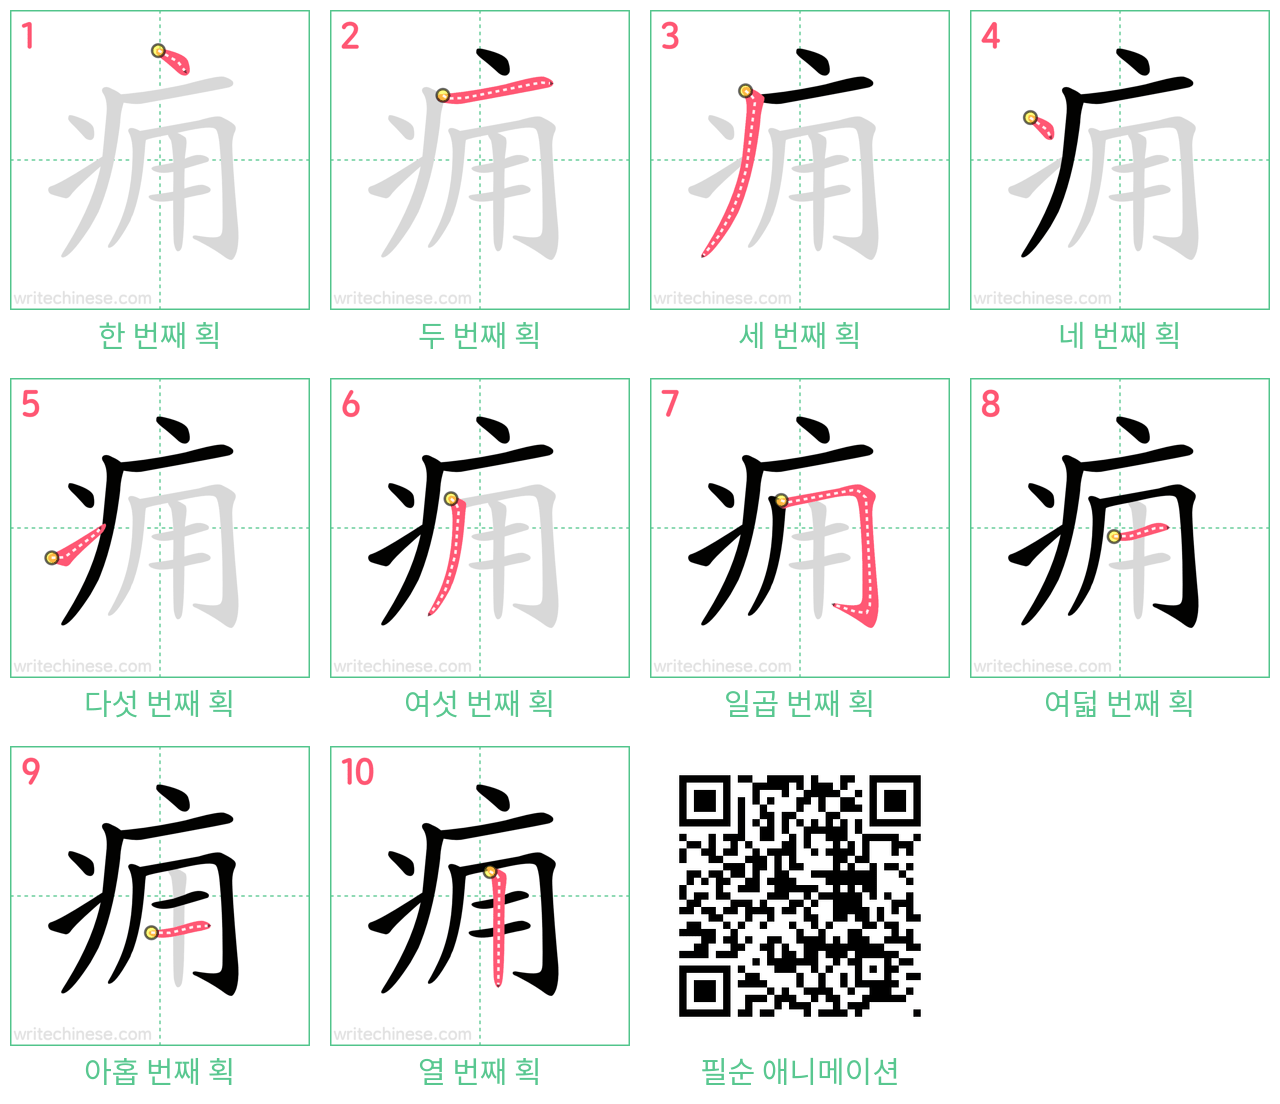 痈 step-by-step stroke order diagrams